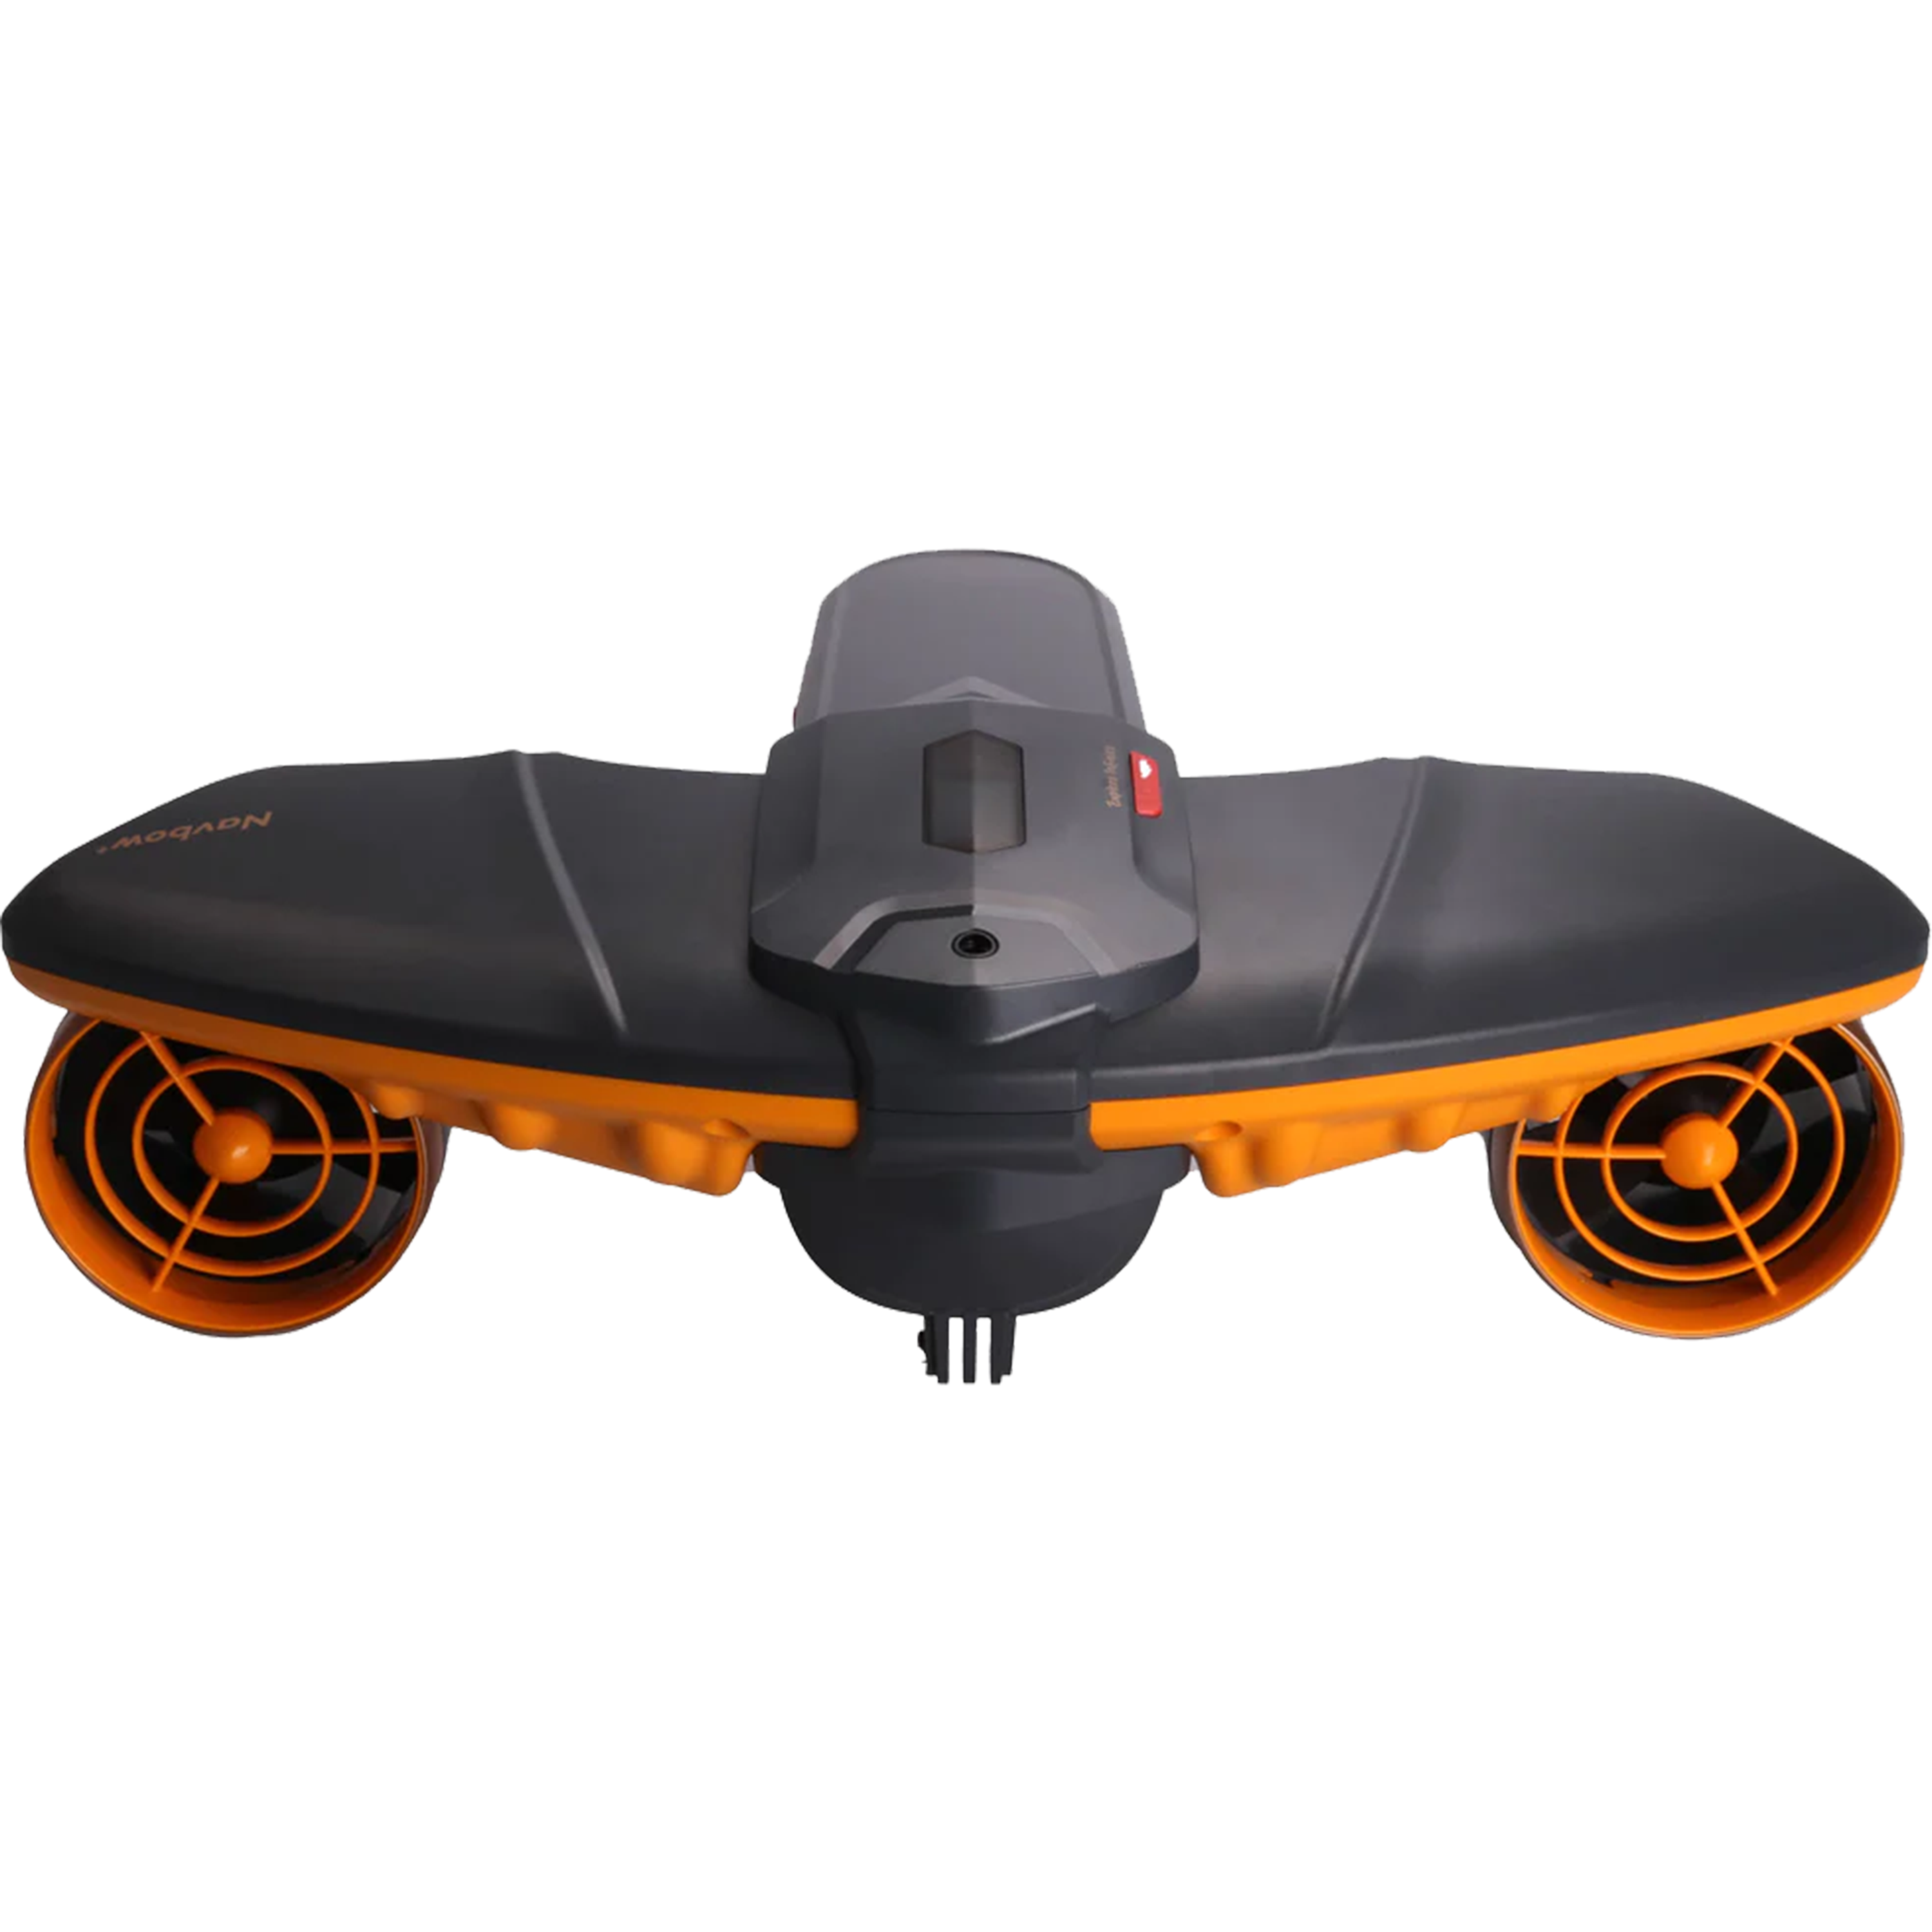 סקוטר -Flame Orange WhiteShark Navbow+ Underwater Scooter (with 158Wh Battery) כתום